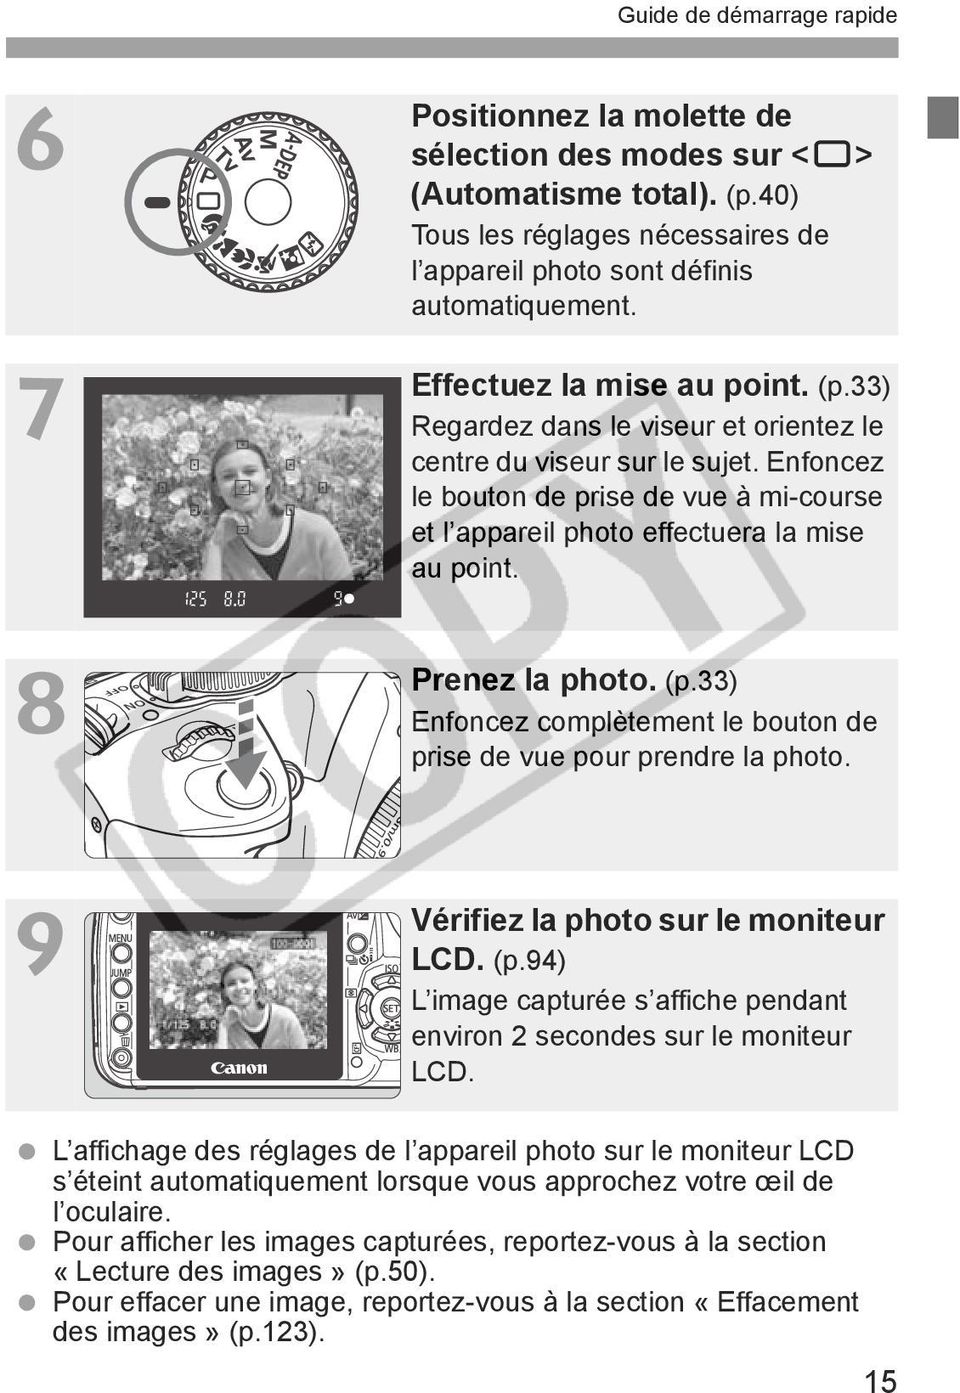 Prenez la photo. (p.33) Enfoncez complètement le bouton de prise de vue pour prendre la photo. Vérifiez la photo sur le moniteur LCD. (p.94) L image capturée s affiche pendant environ 2 secondes sur le moniteur LCD.